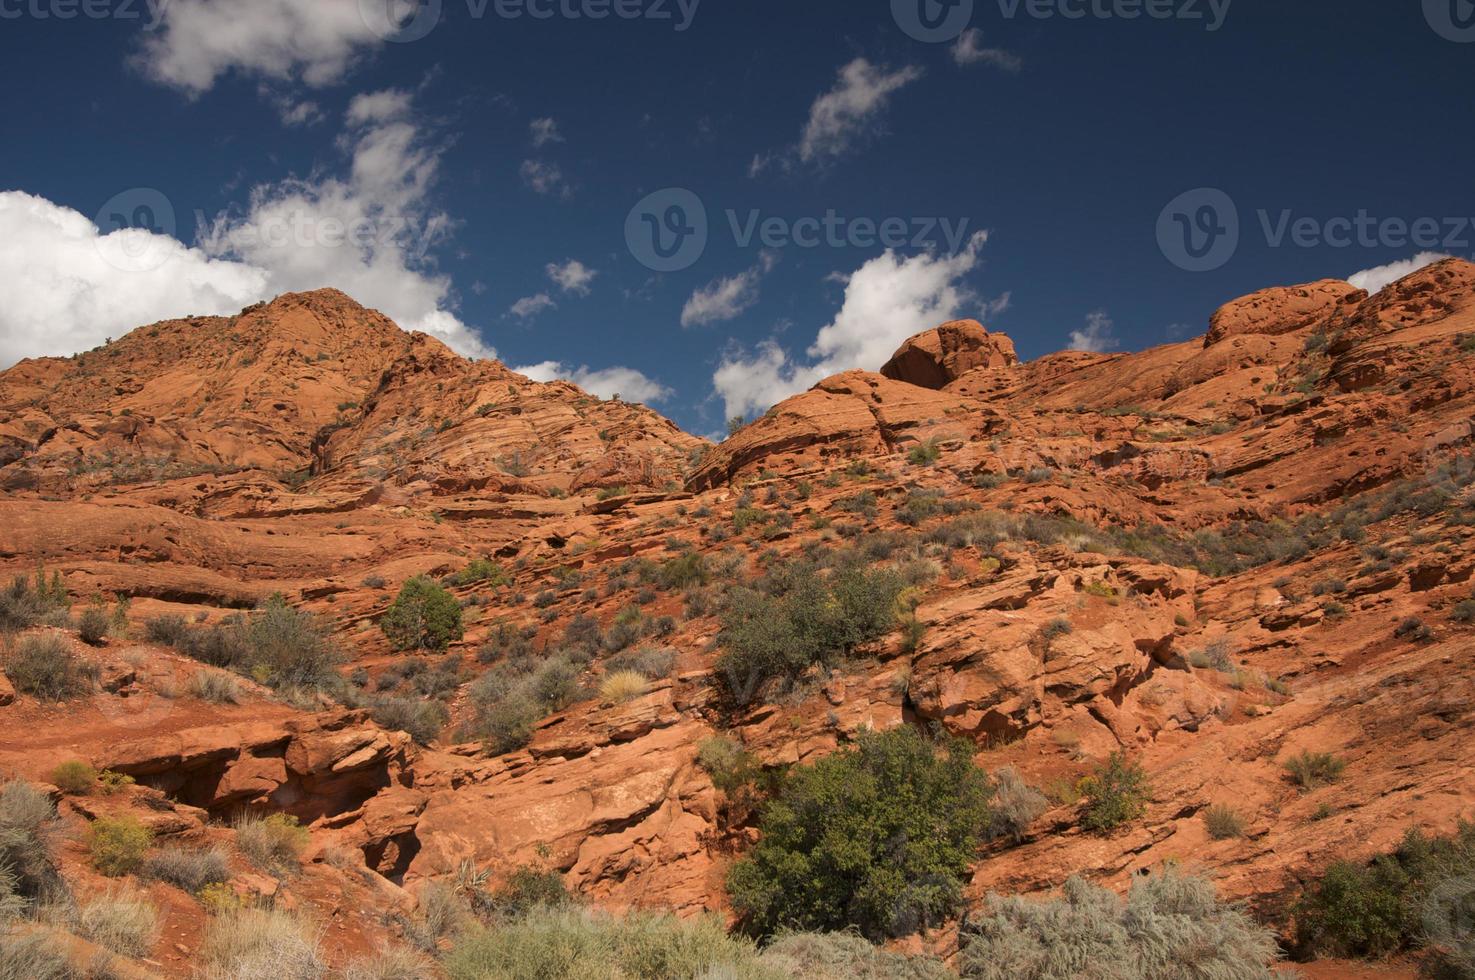 rood rotsen van Utah foto